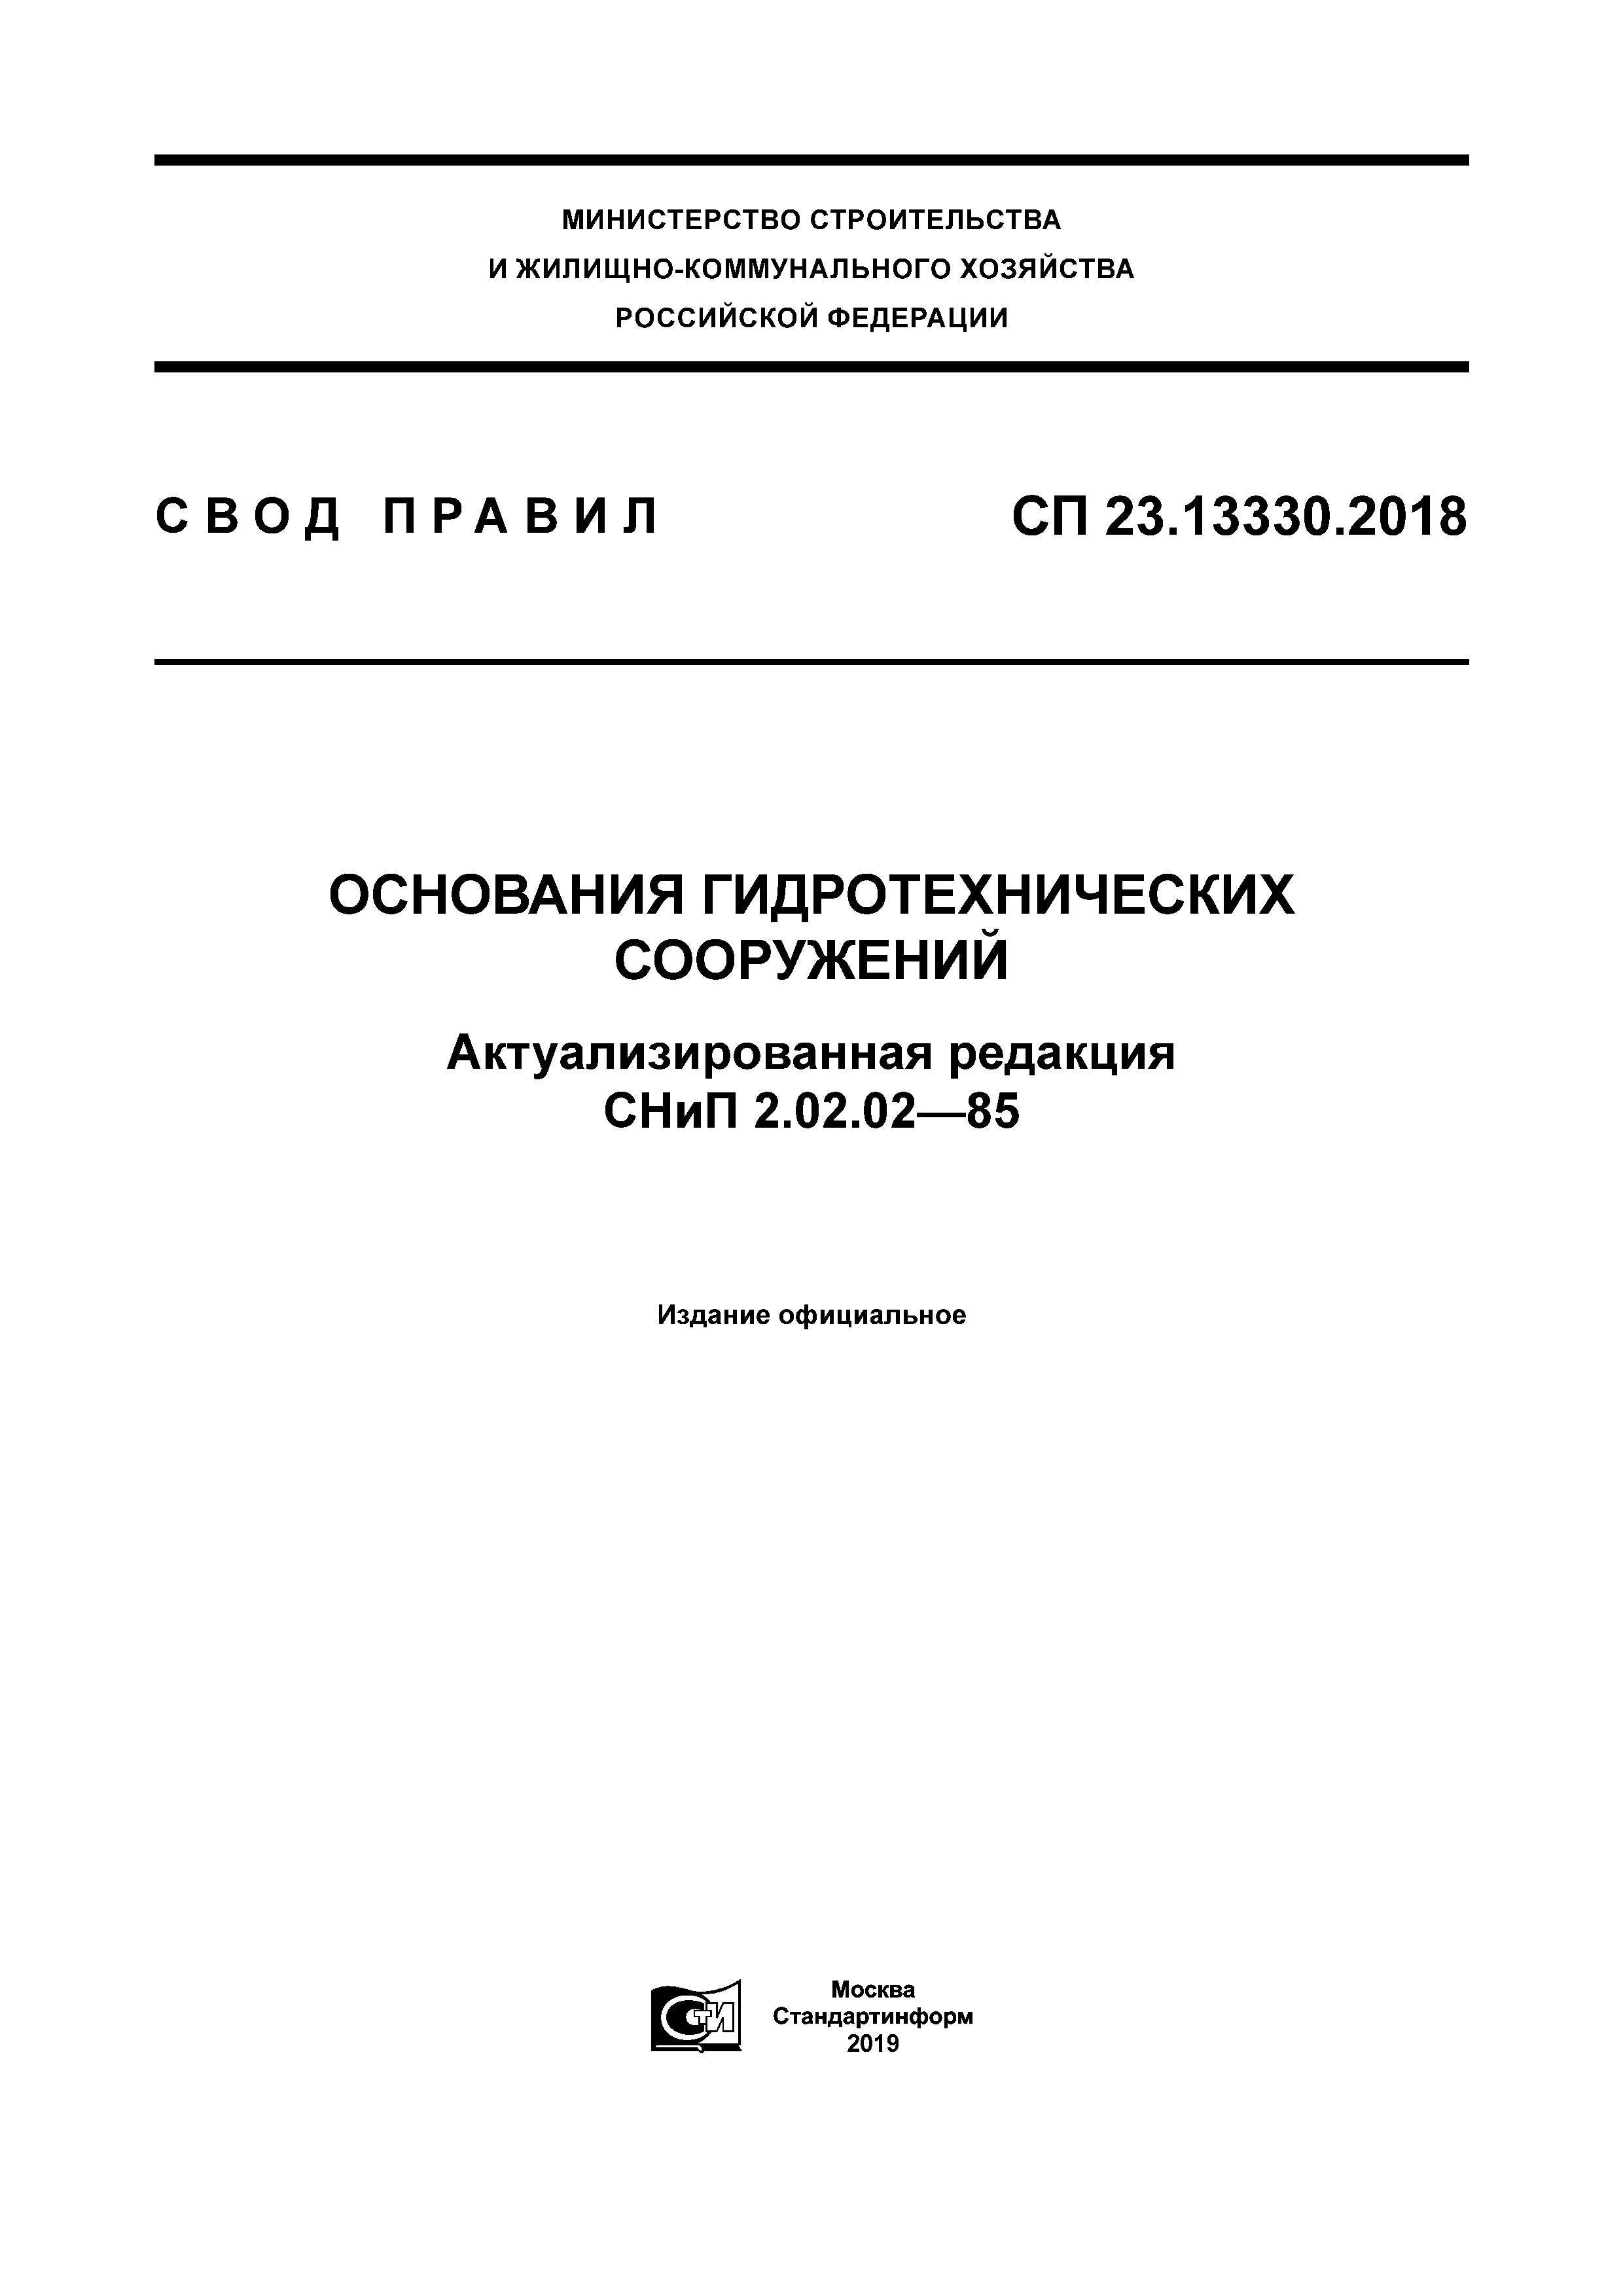 СП 23.13330.2018